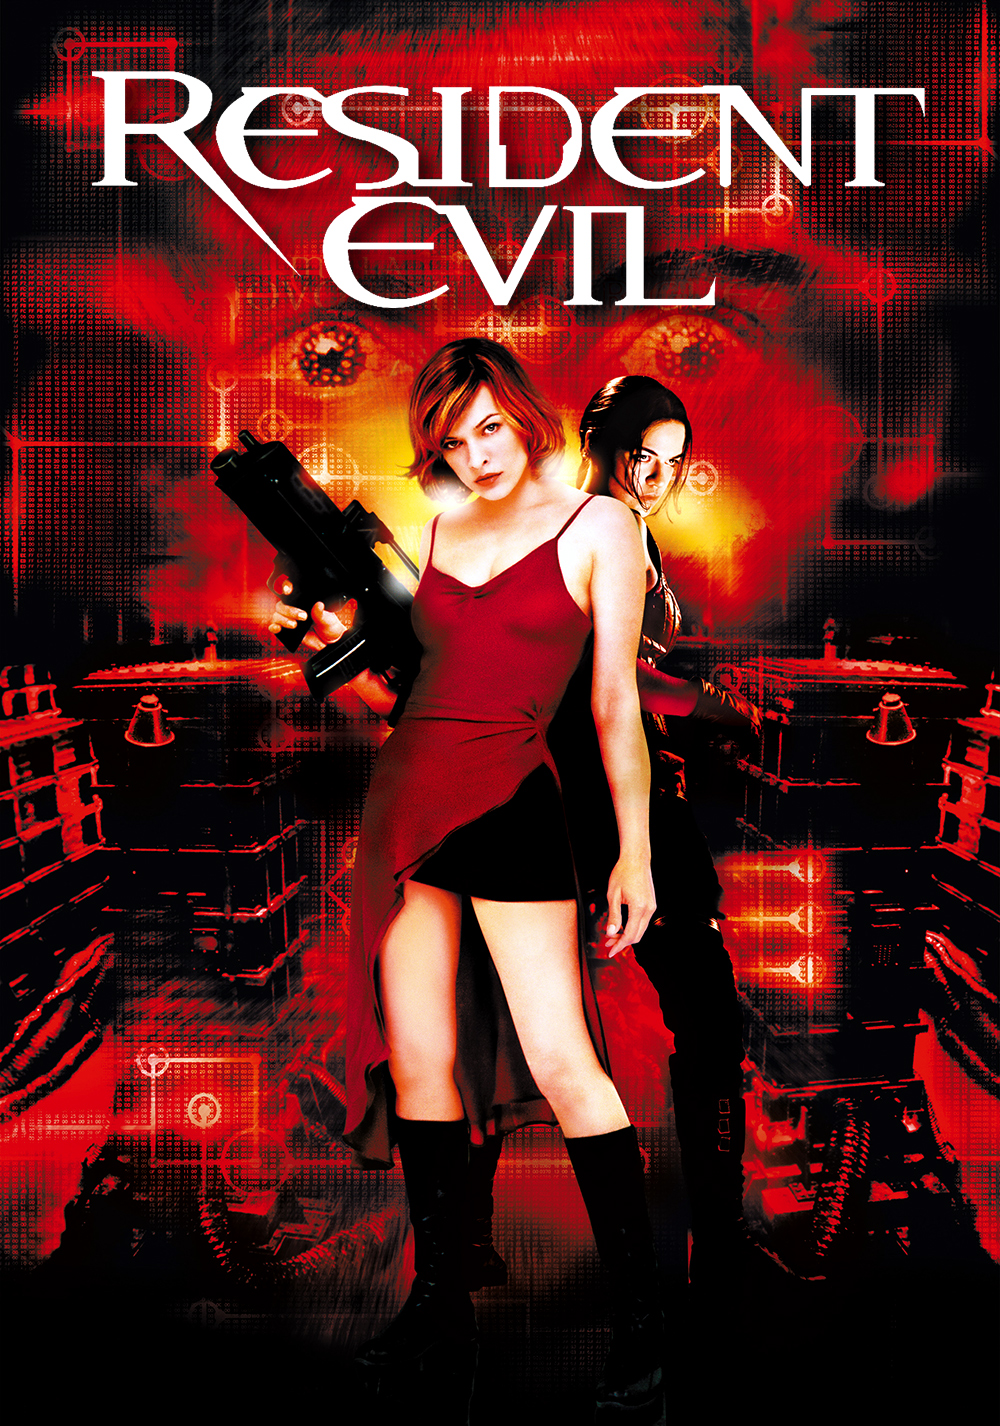 Resident evil 1 часть. Resident Evil 2002 Милла Йовович. Обитель зла 2002 обложка.